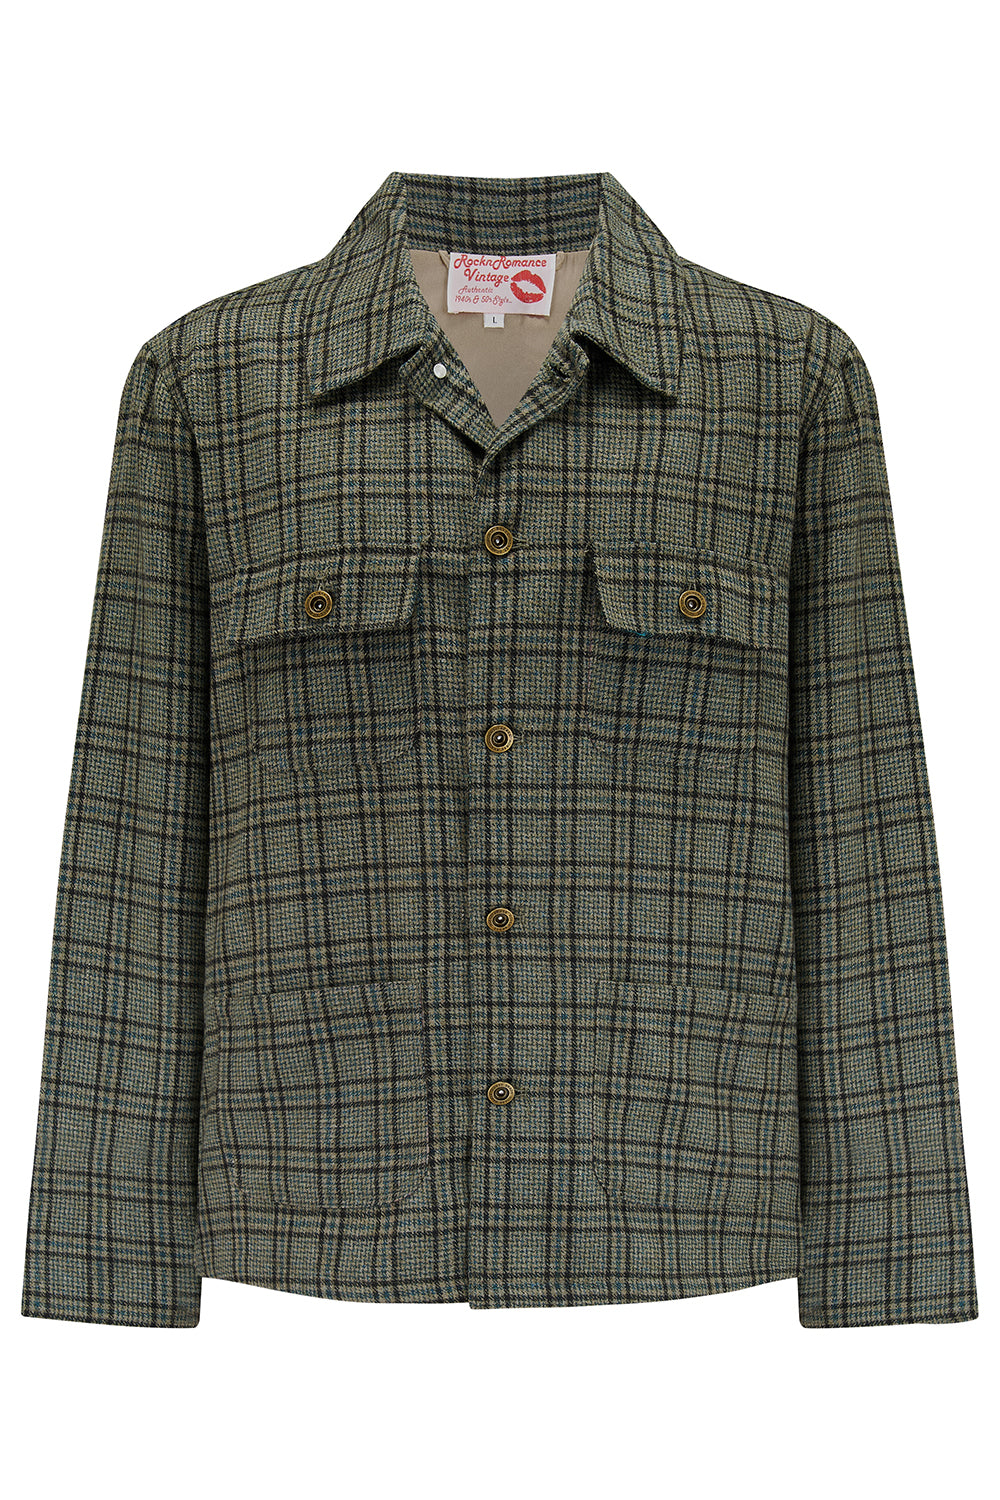 Die Herren-Hausarbeitsjacke „Bronson“ in grau/braun kariert, außen aus 100 % Wolle. Rockabilly-Vintage-Stil der 1950er Jahre